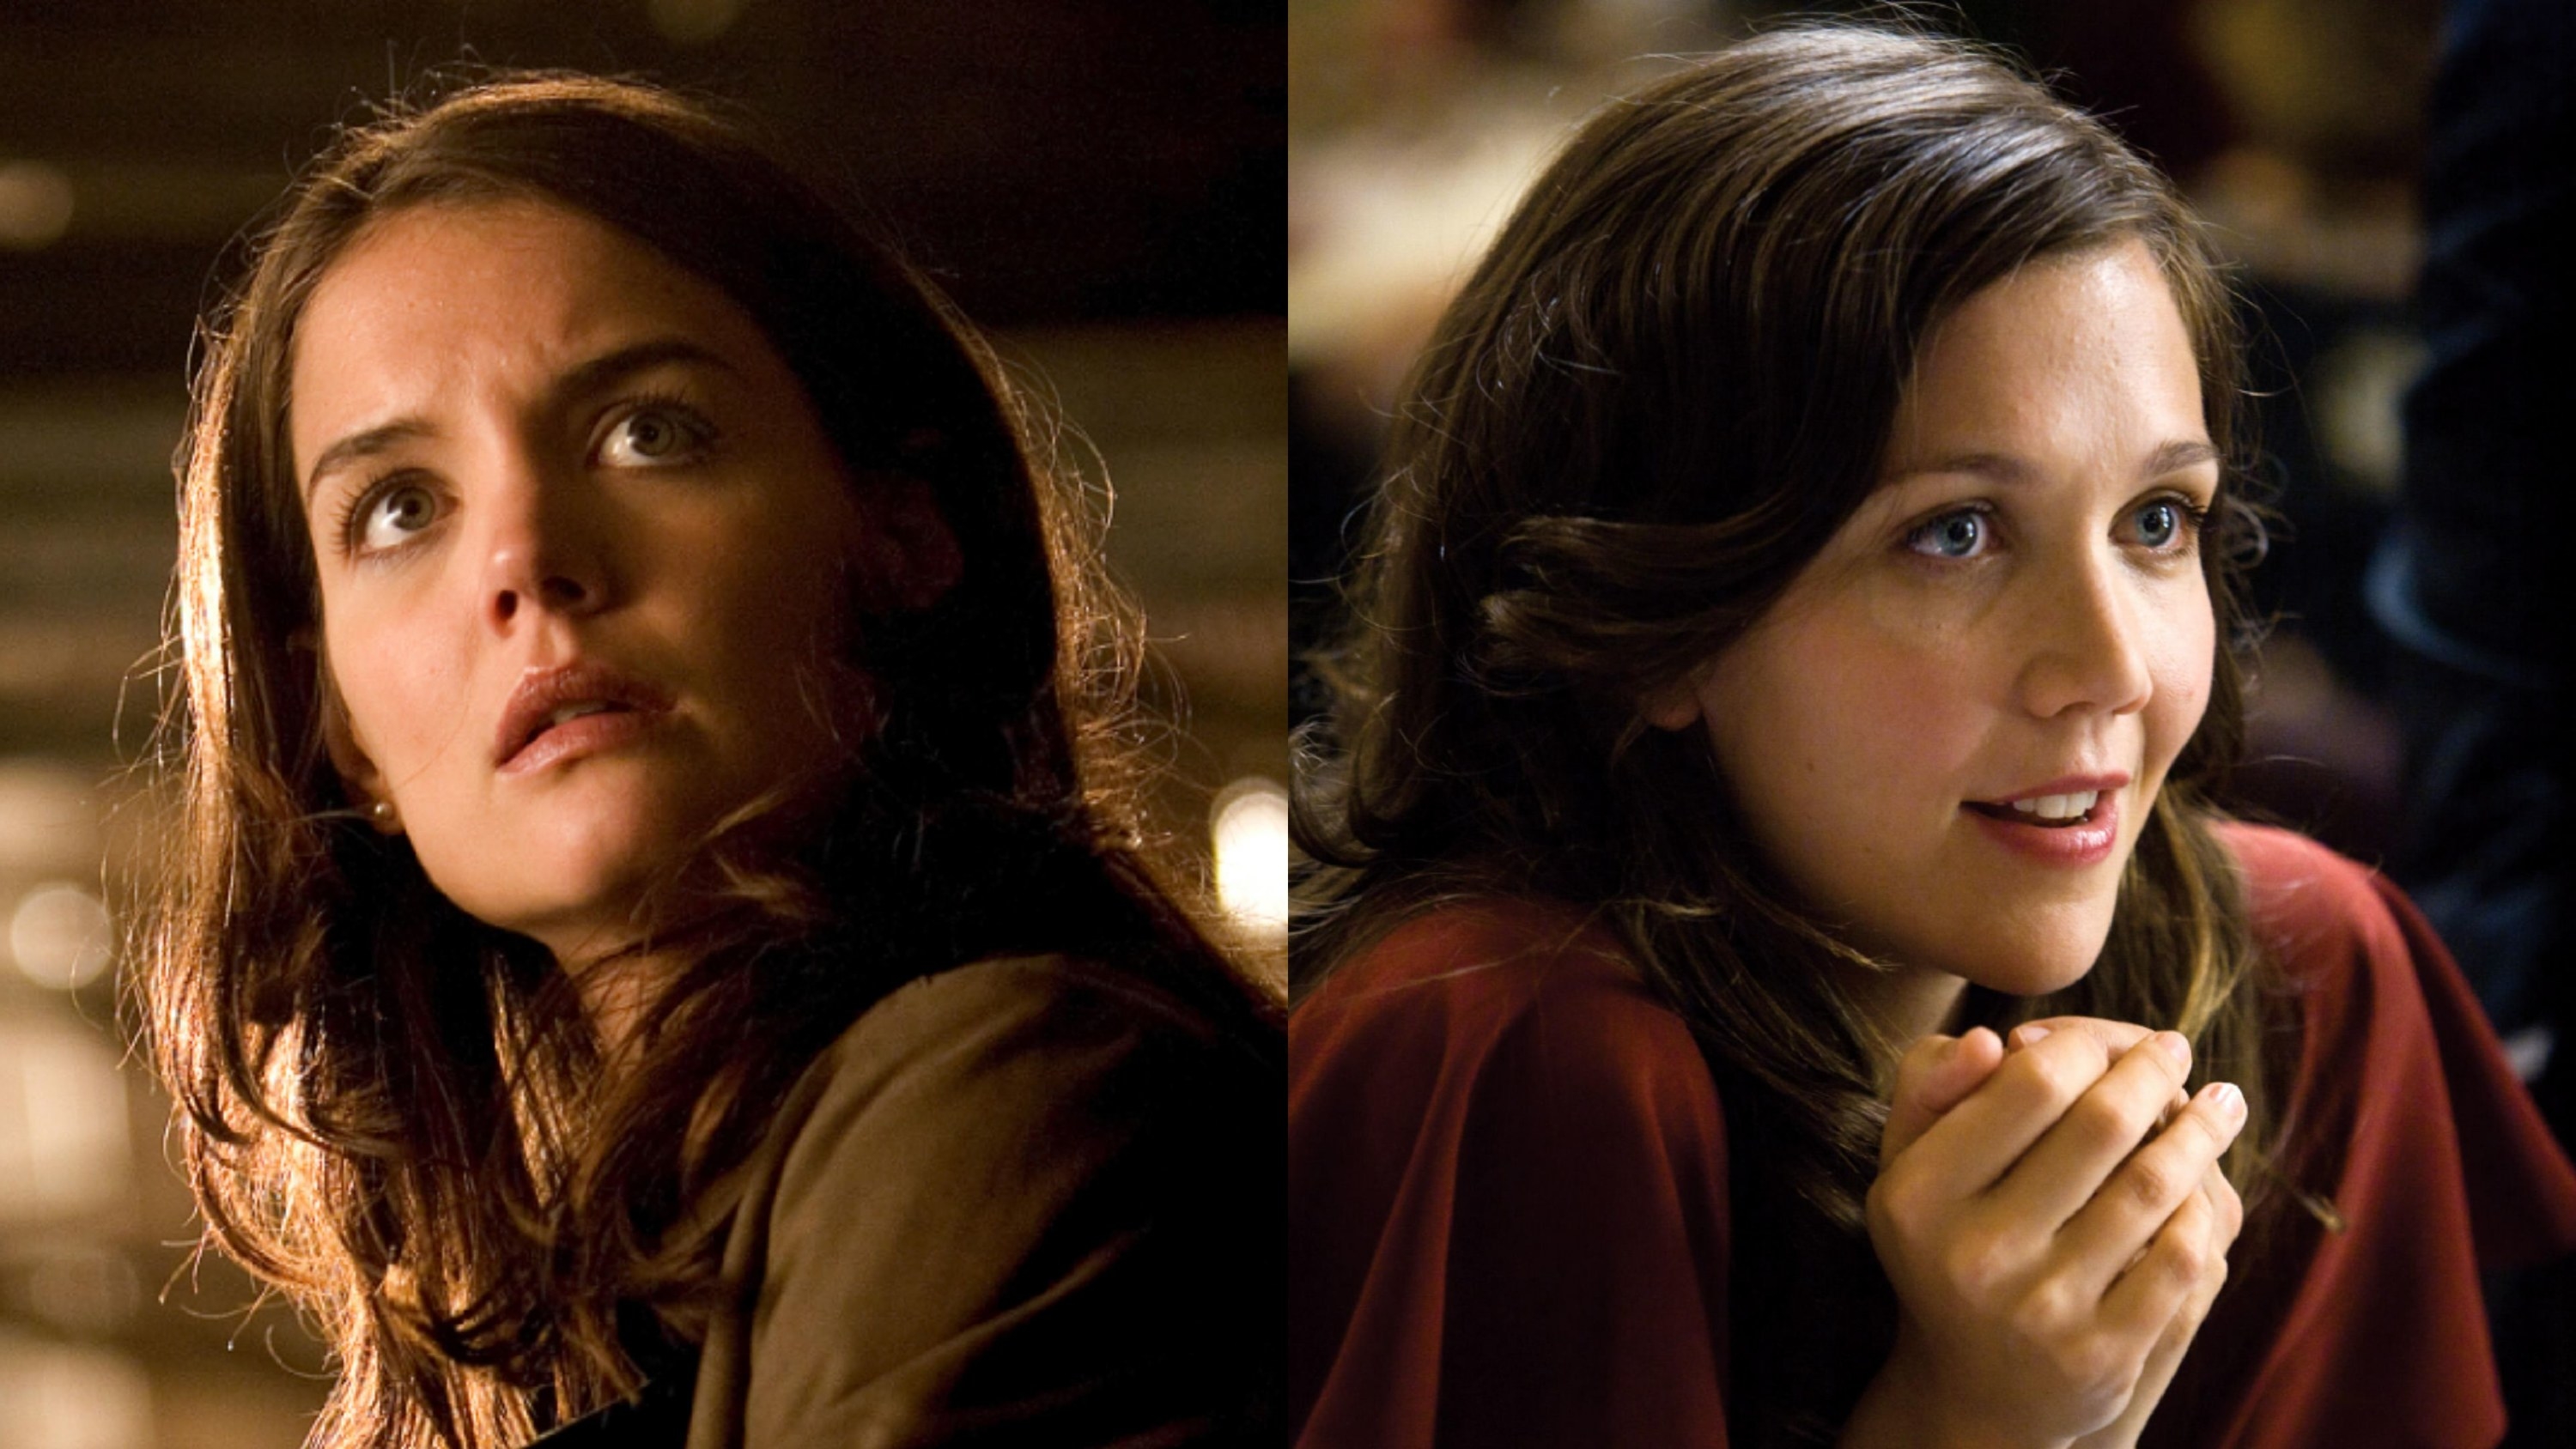 Katie Holmes as Rachel vs Maggie Gyllenhaal as Rachel